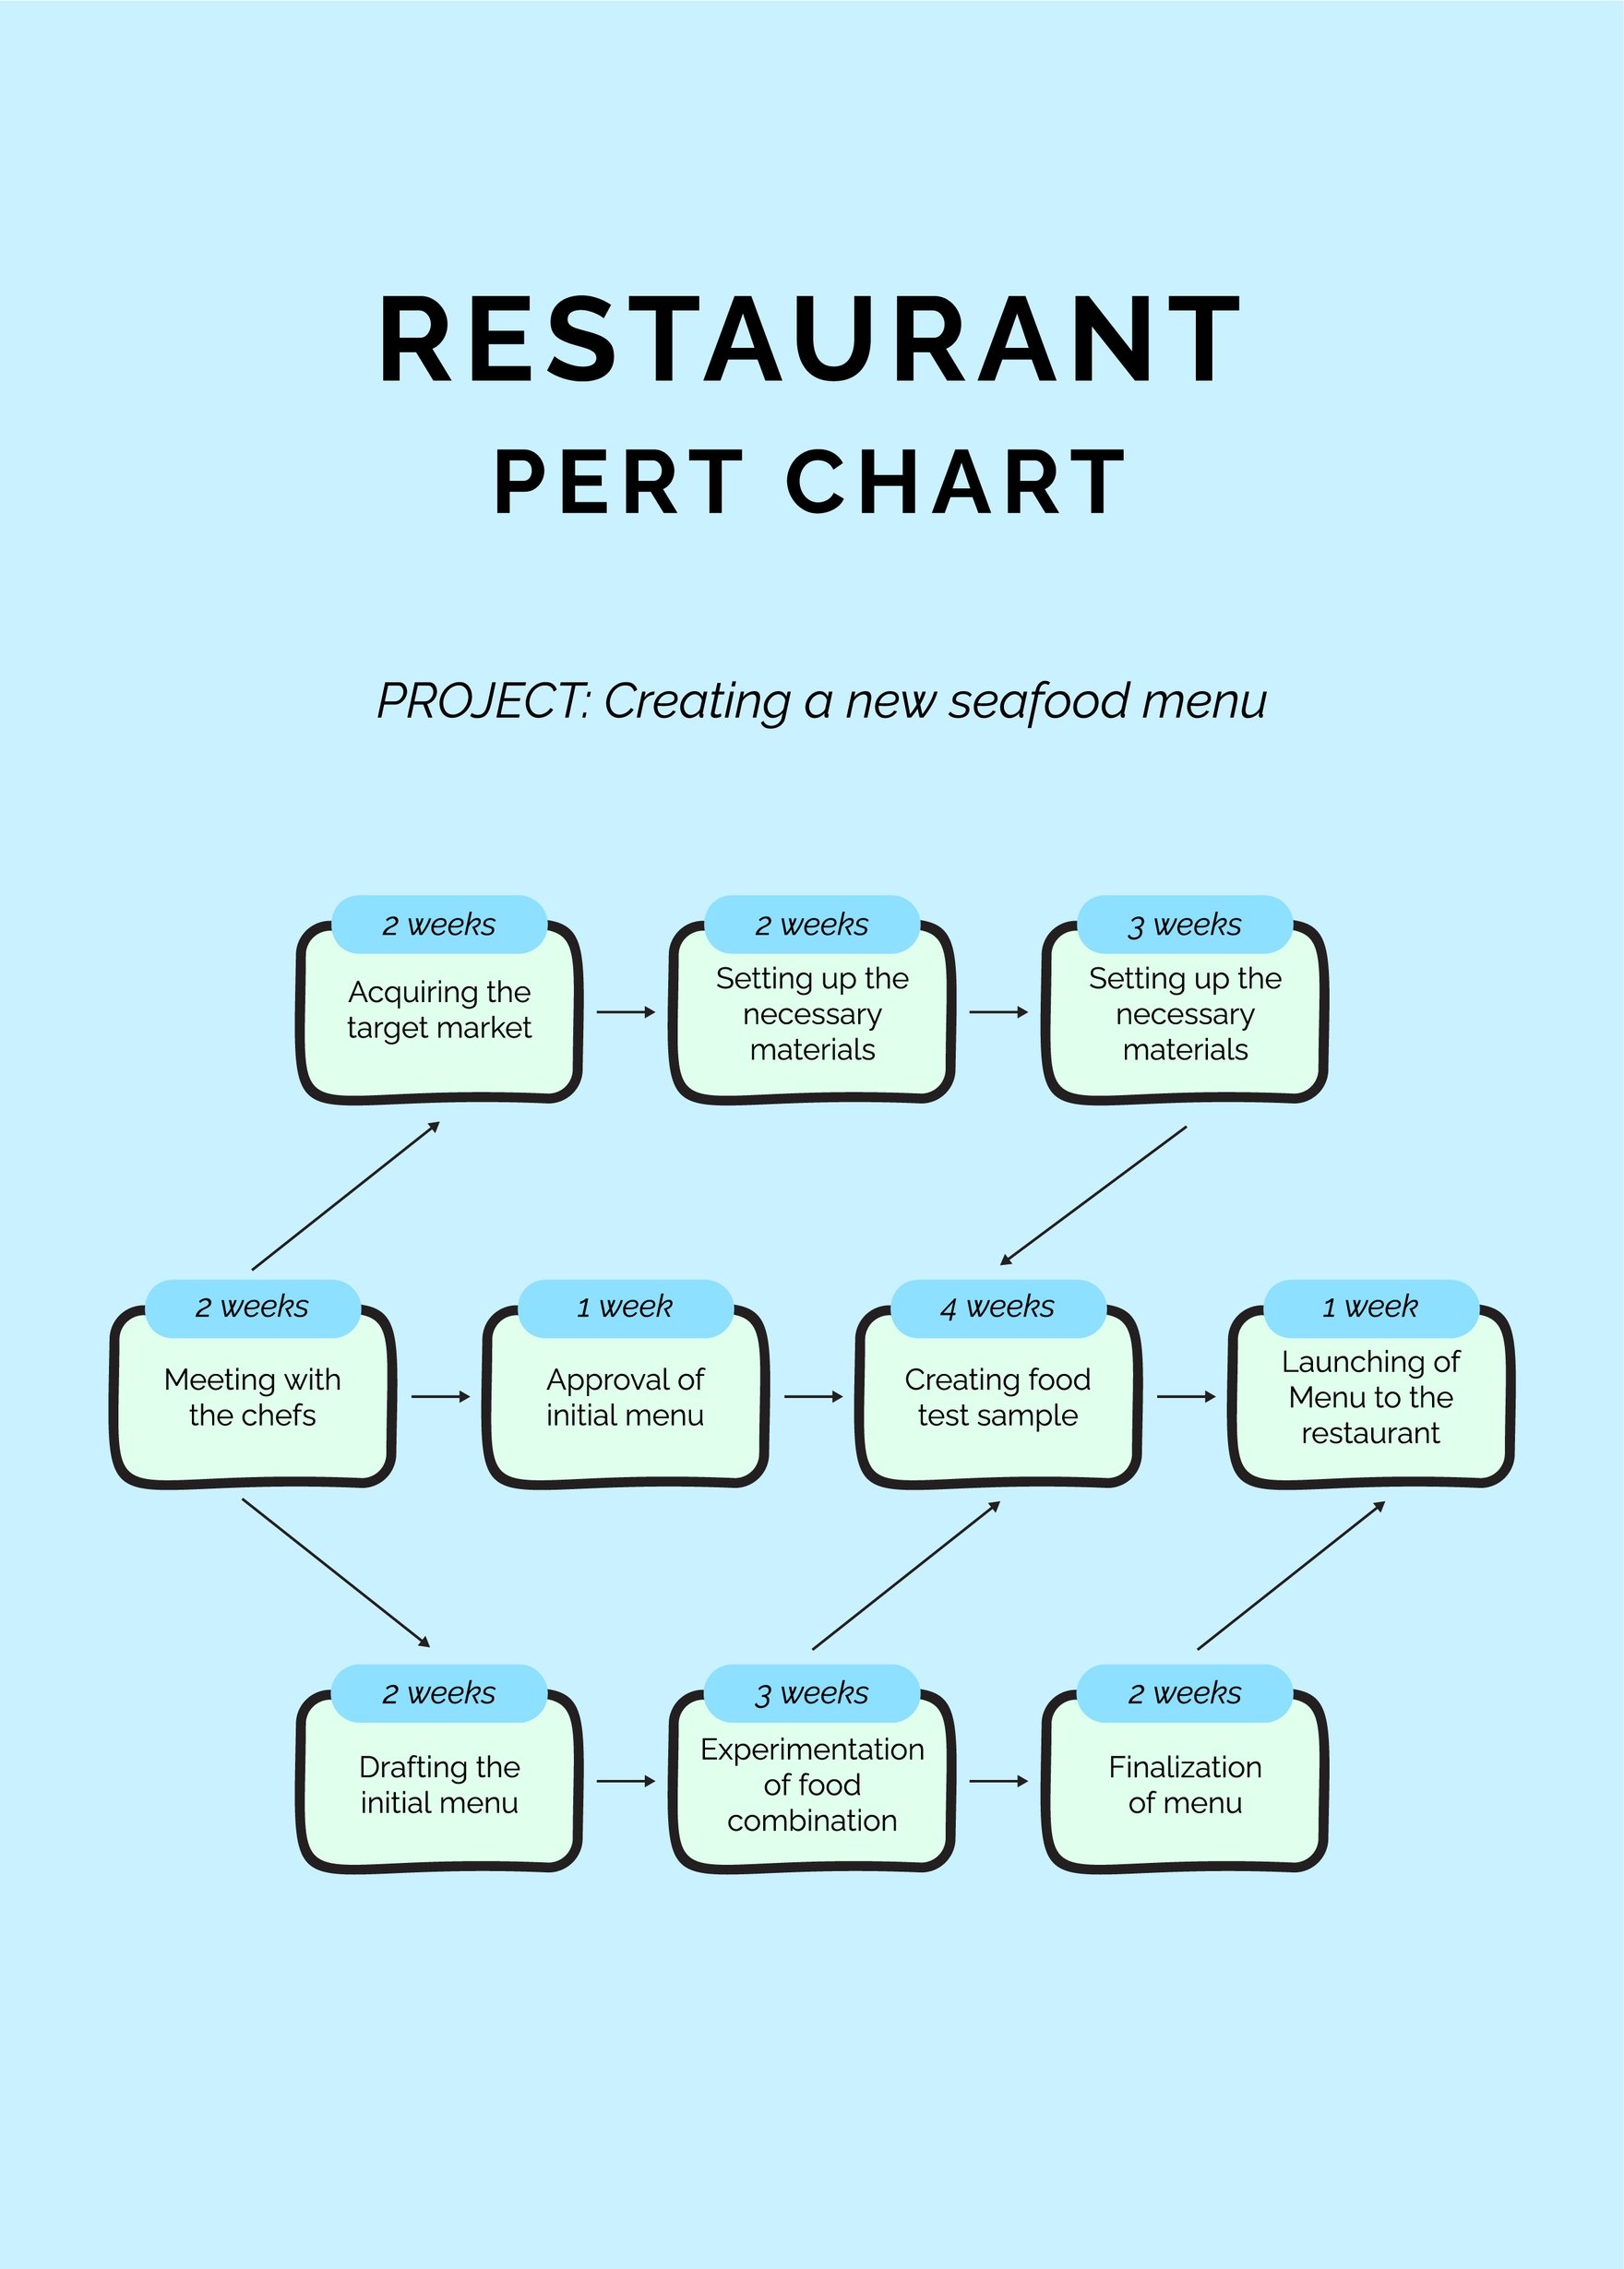 pert chart template word